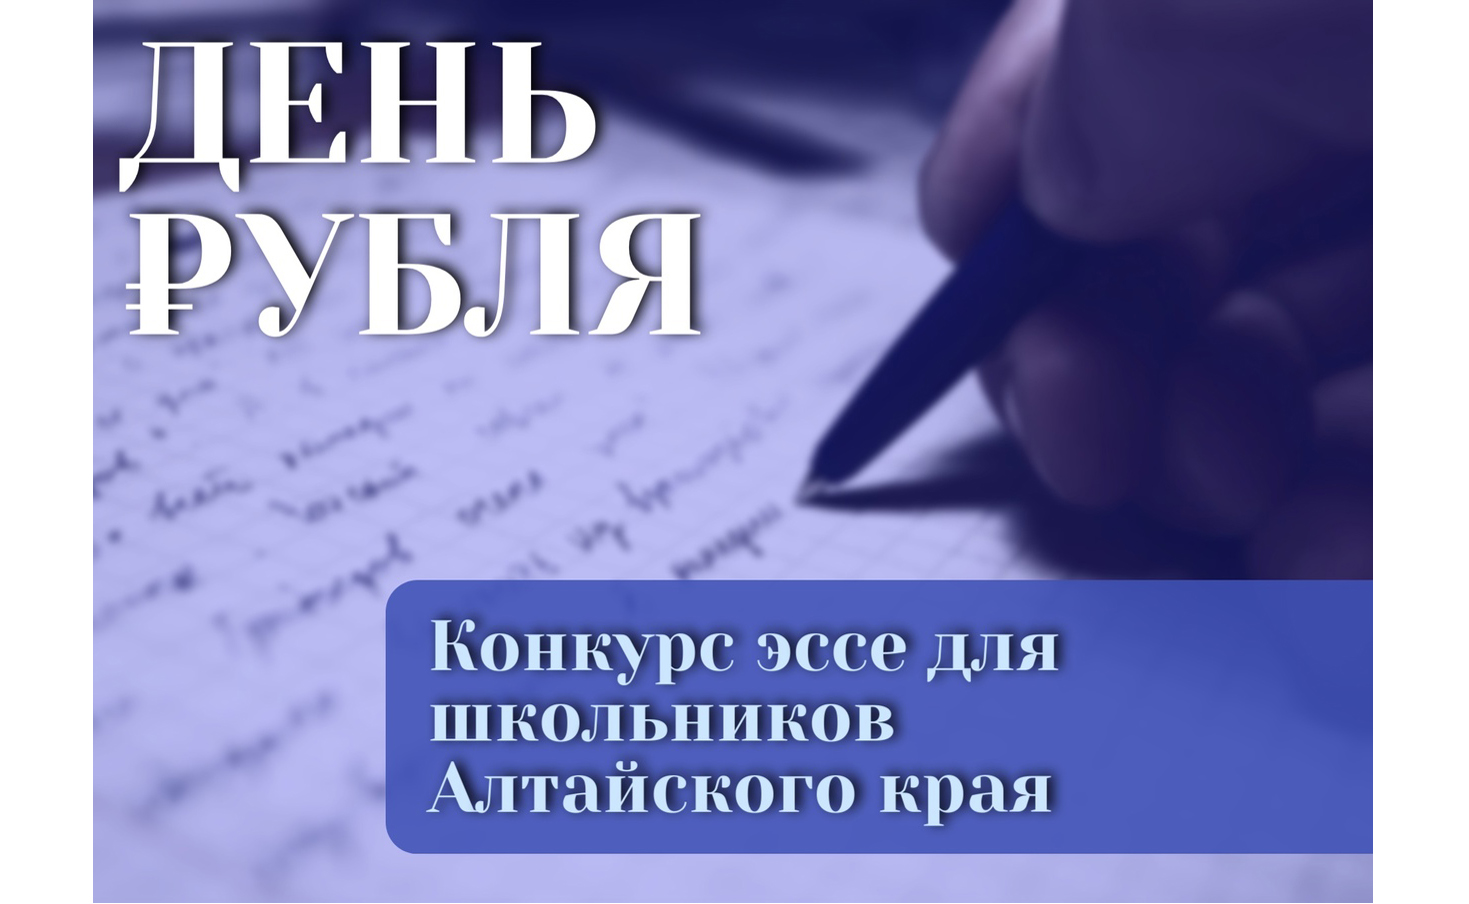  Школьники Алтайского края могут принять участие в конкурсе эссе.